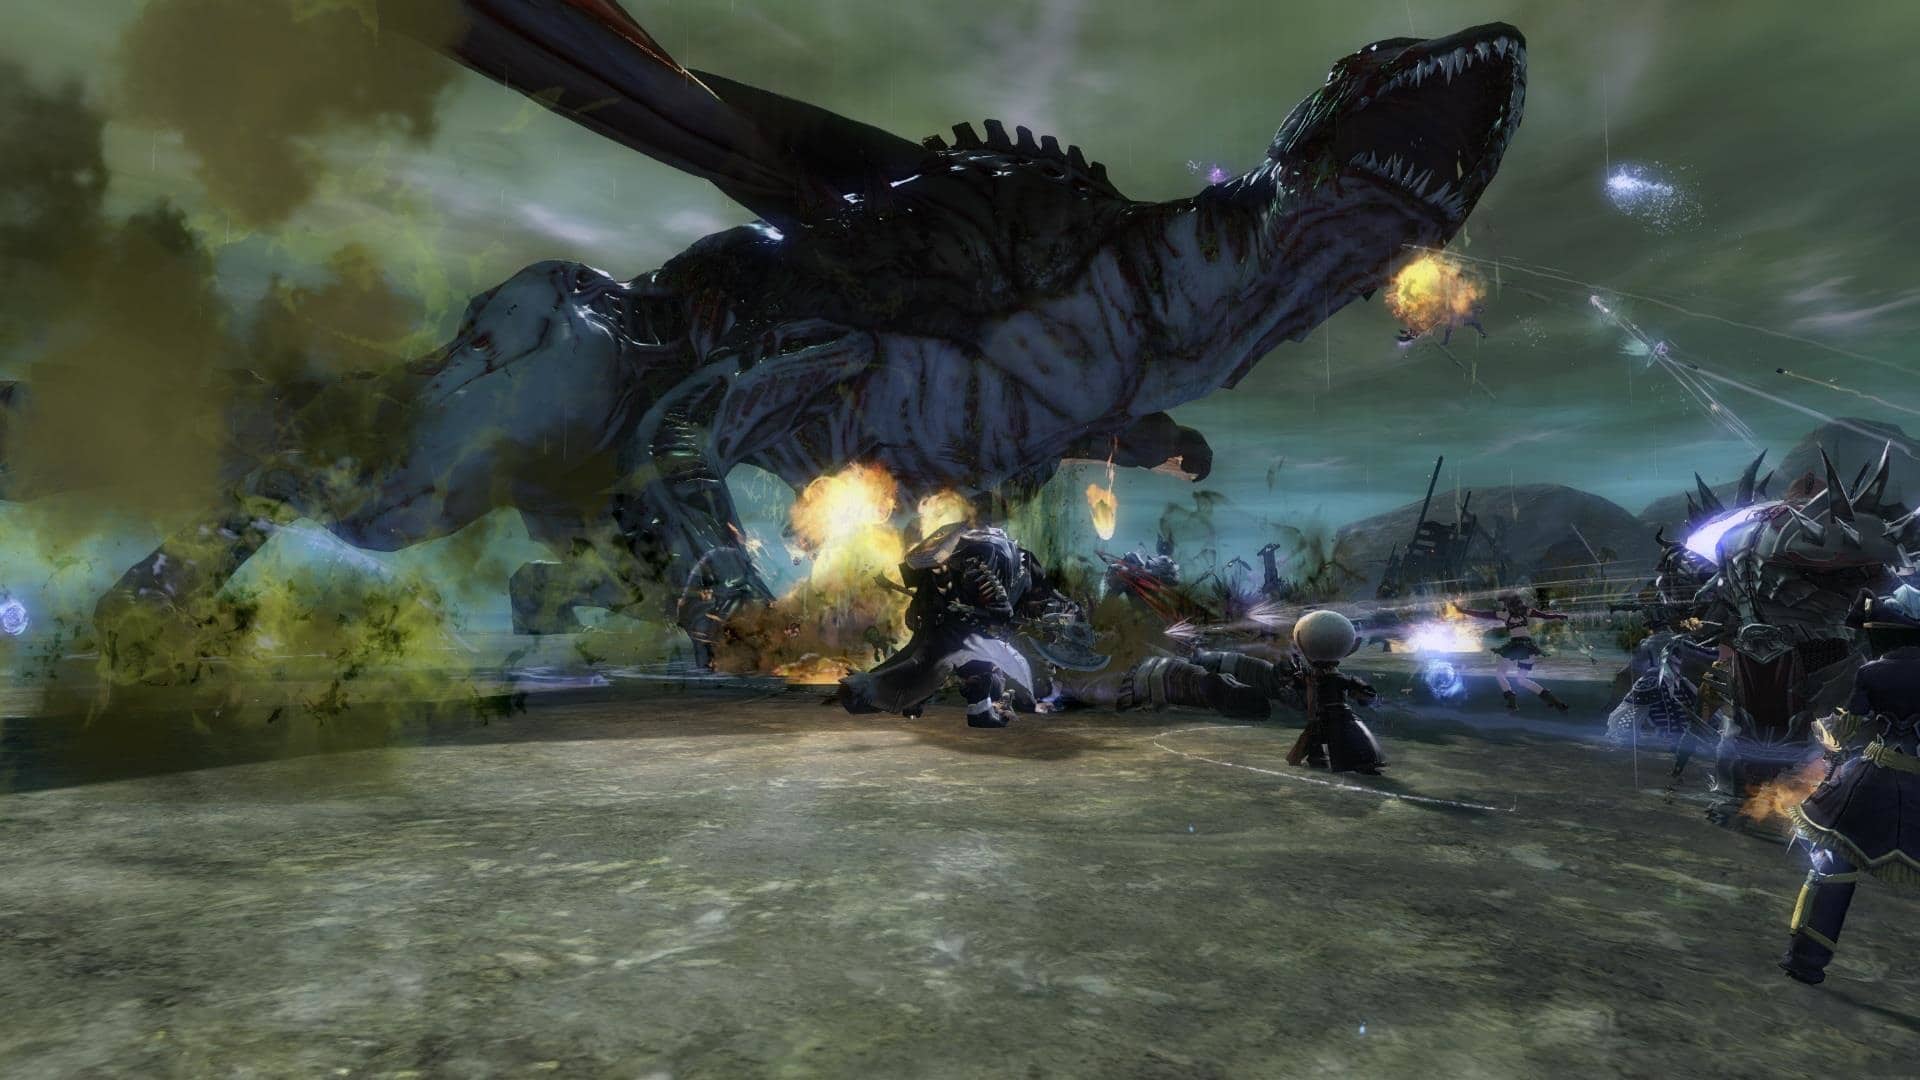 Er is geen groepsdruk in Guild Wars 2, gevechten tegen de gigantische draken zullen ontelbare teamgenoten alleen vinden.